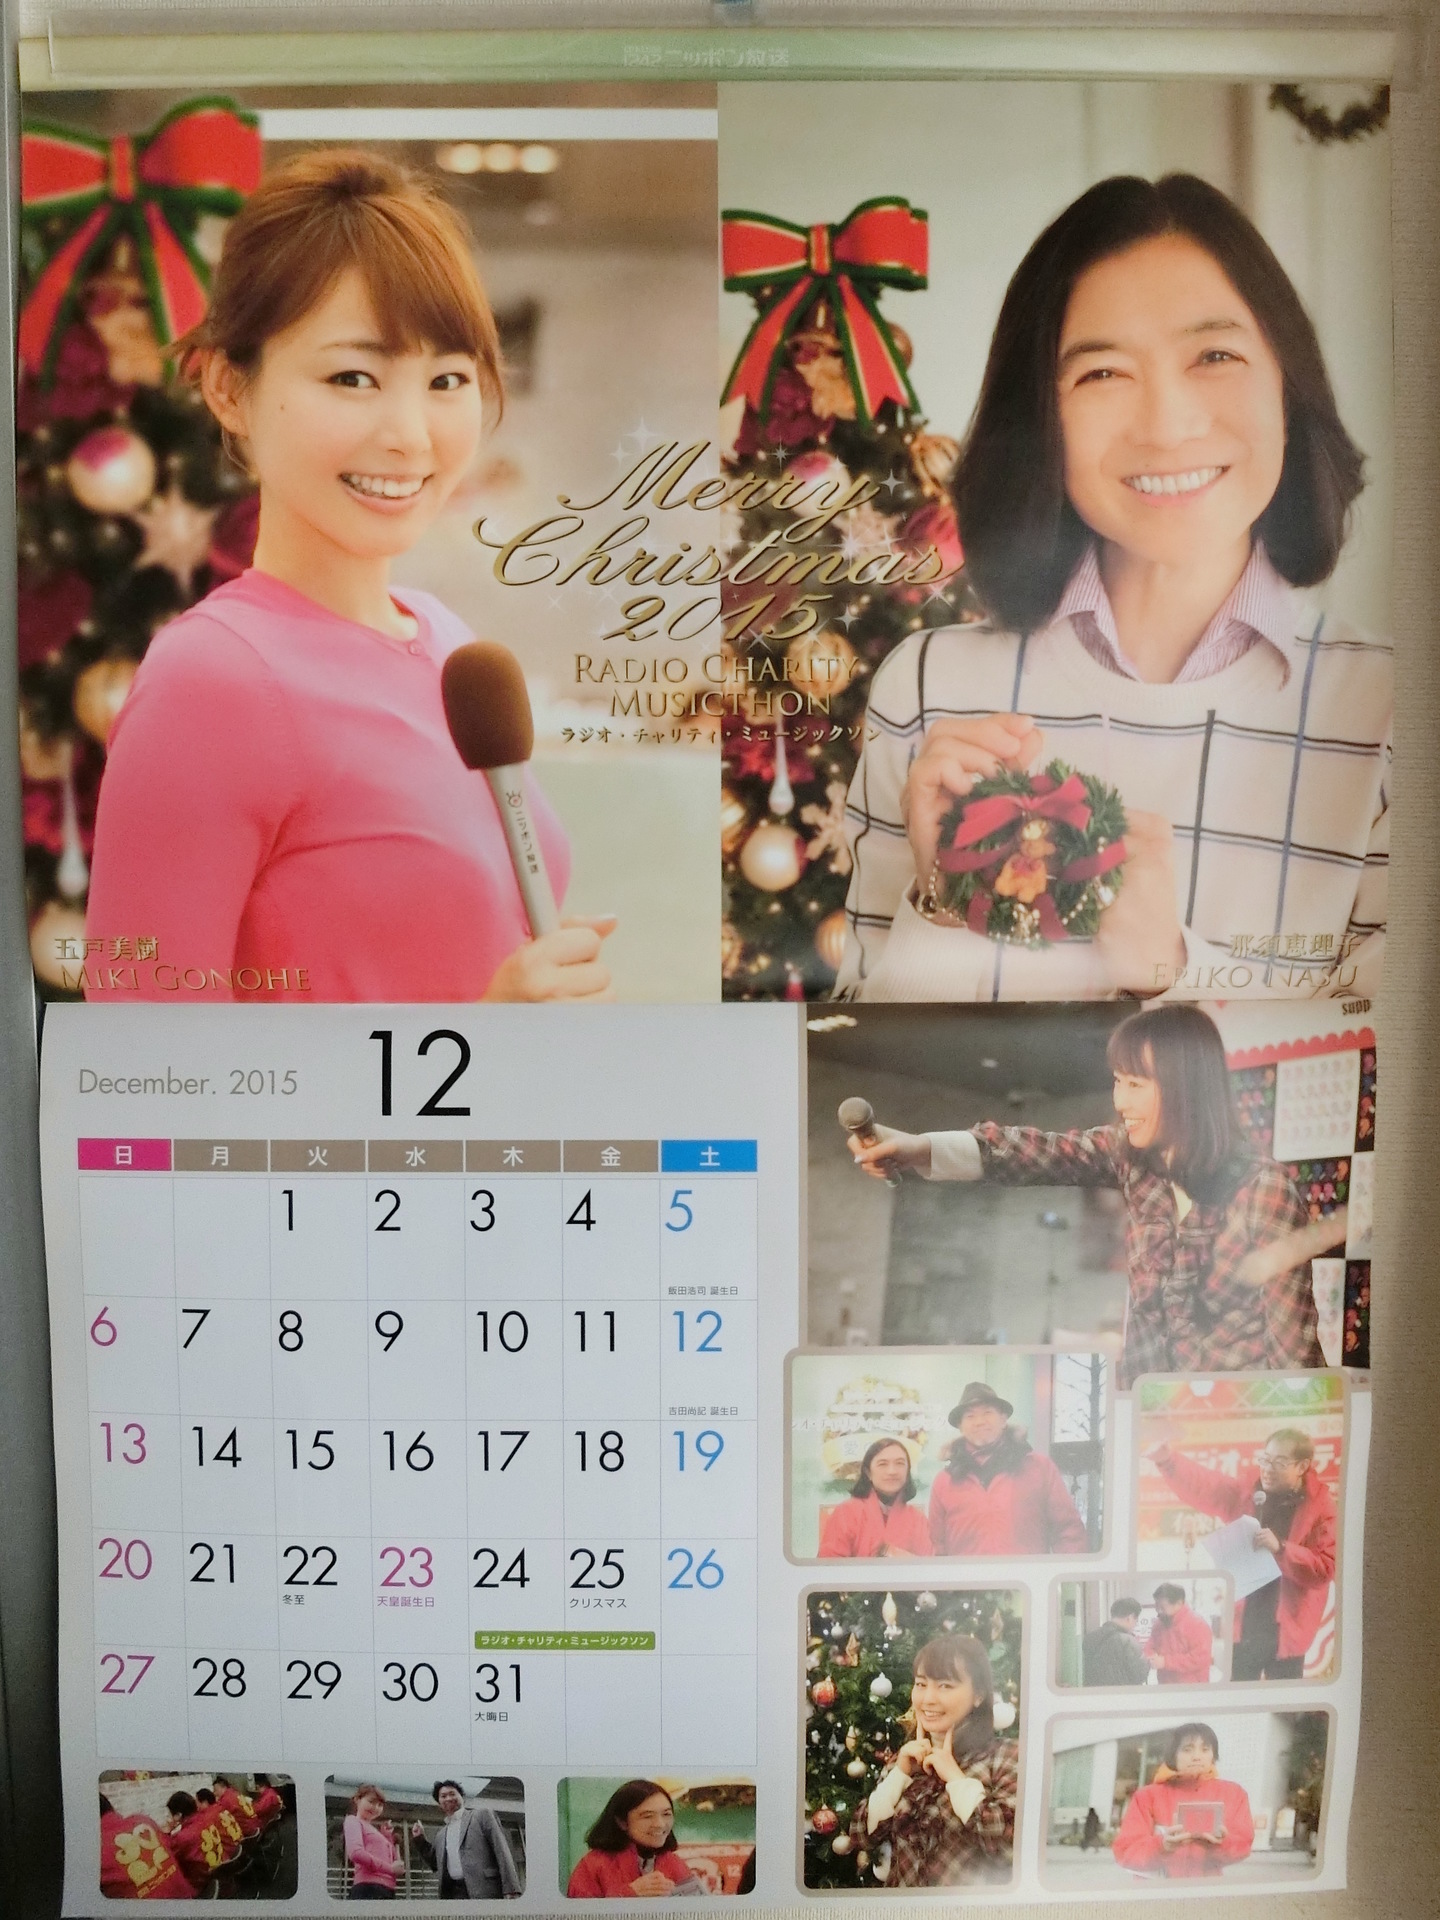 写真付き 15年12月のニッポン放送女性アナウンサーカレンダーは 五戸美樹元アナと那須恵理子アナ 五戸ちゃんとも これでお別れですなあ